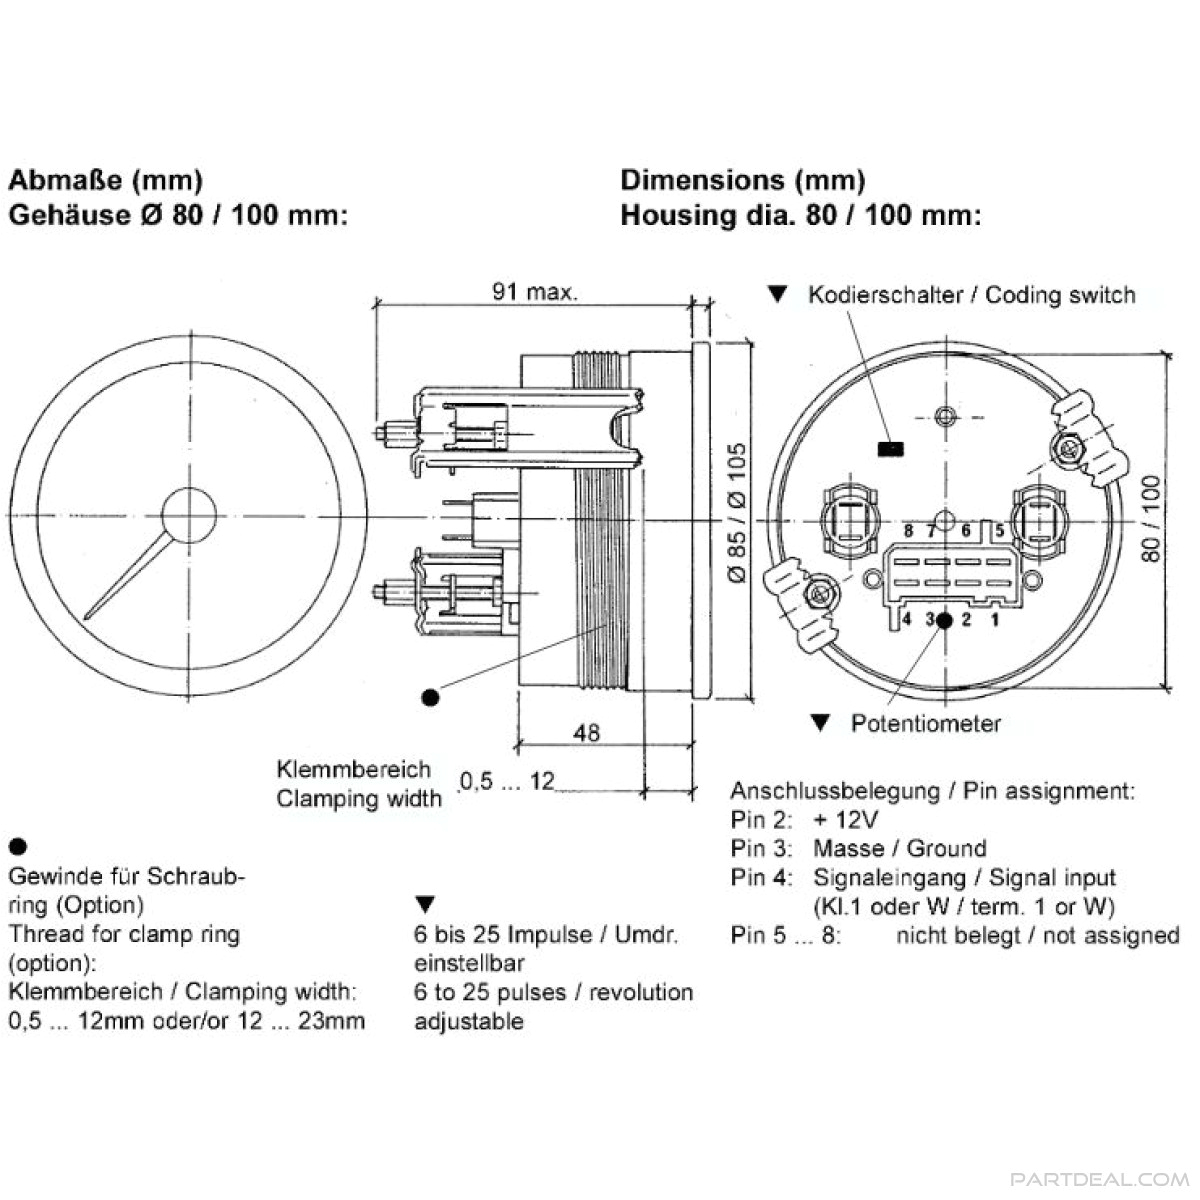 vdo oil pressure gauge wiring diagram best of auto gauge oilvdo oil pressure gauge wiring diagram